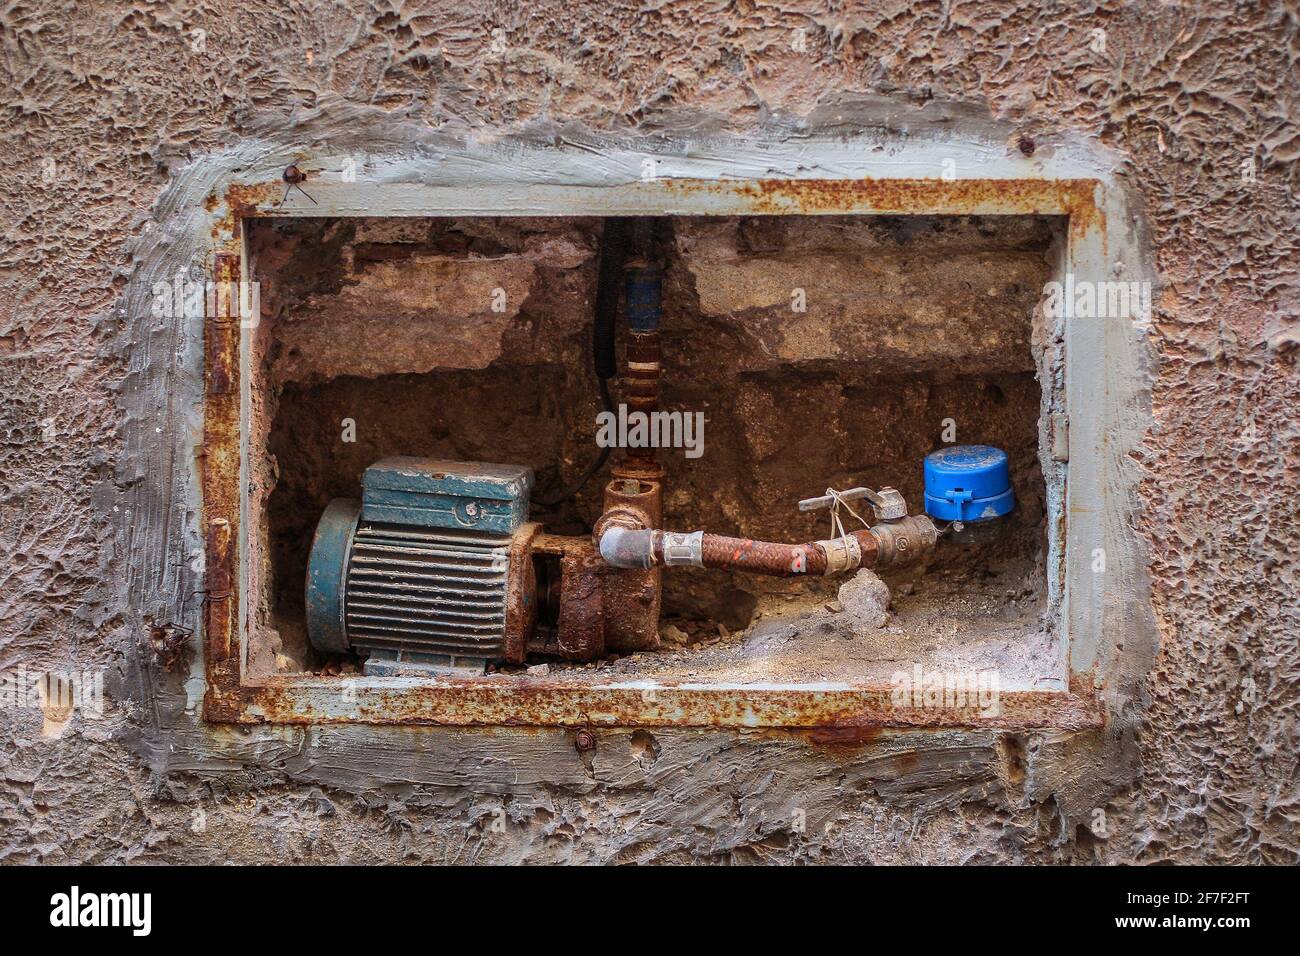 Una bomba de agua de motor eléctrico antigua instalada en una pared de una  casa. Bomba de agua antigua oxidada con tubería visible, válvula y  contador. Concepto de viejo p Fotografía de